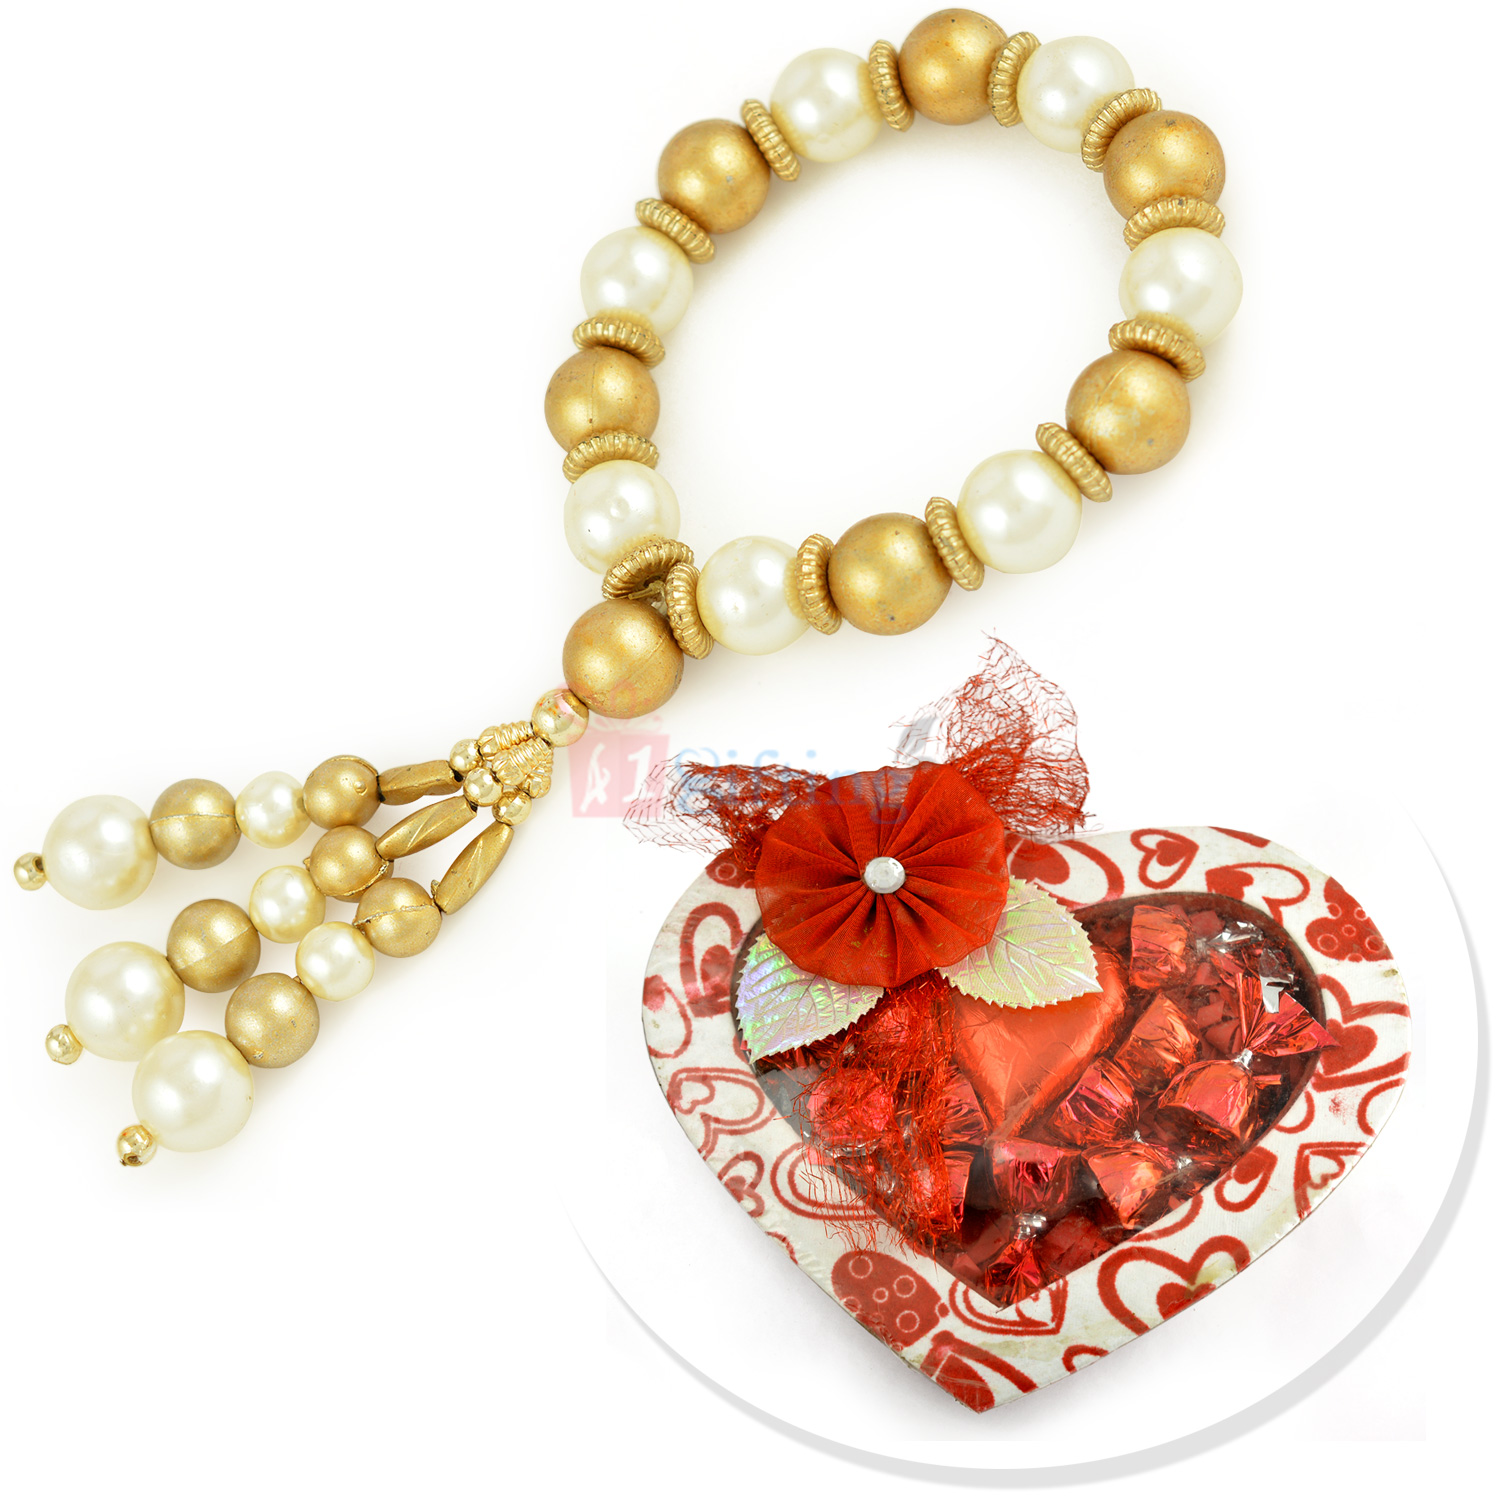 Handmade Heart Shape Chocolate with Awesome Pearl Beads Bracelet